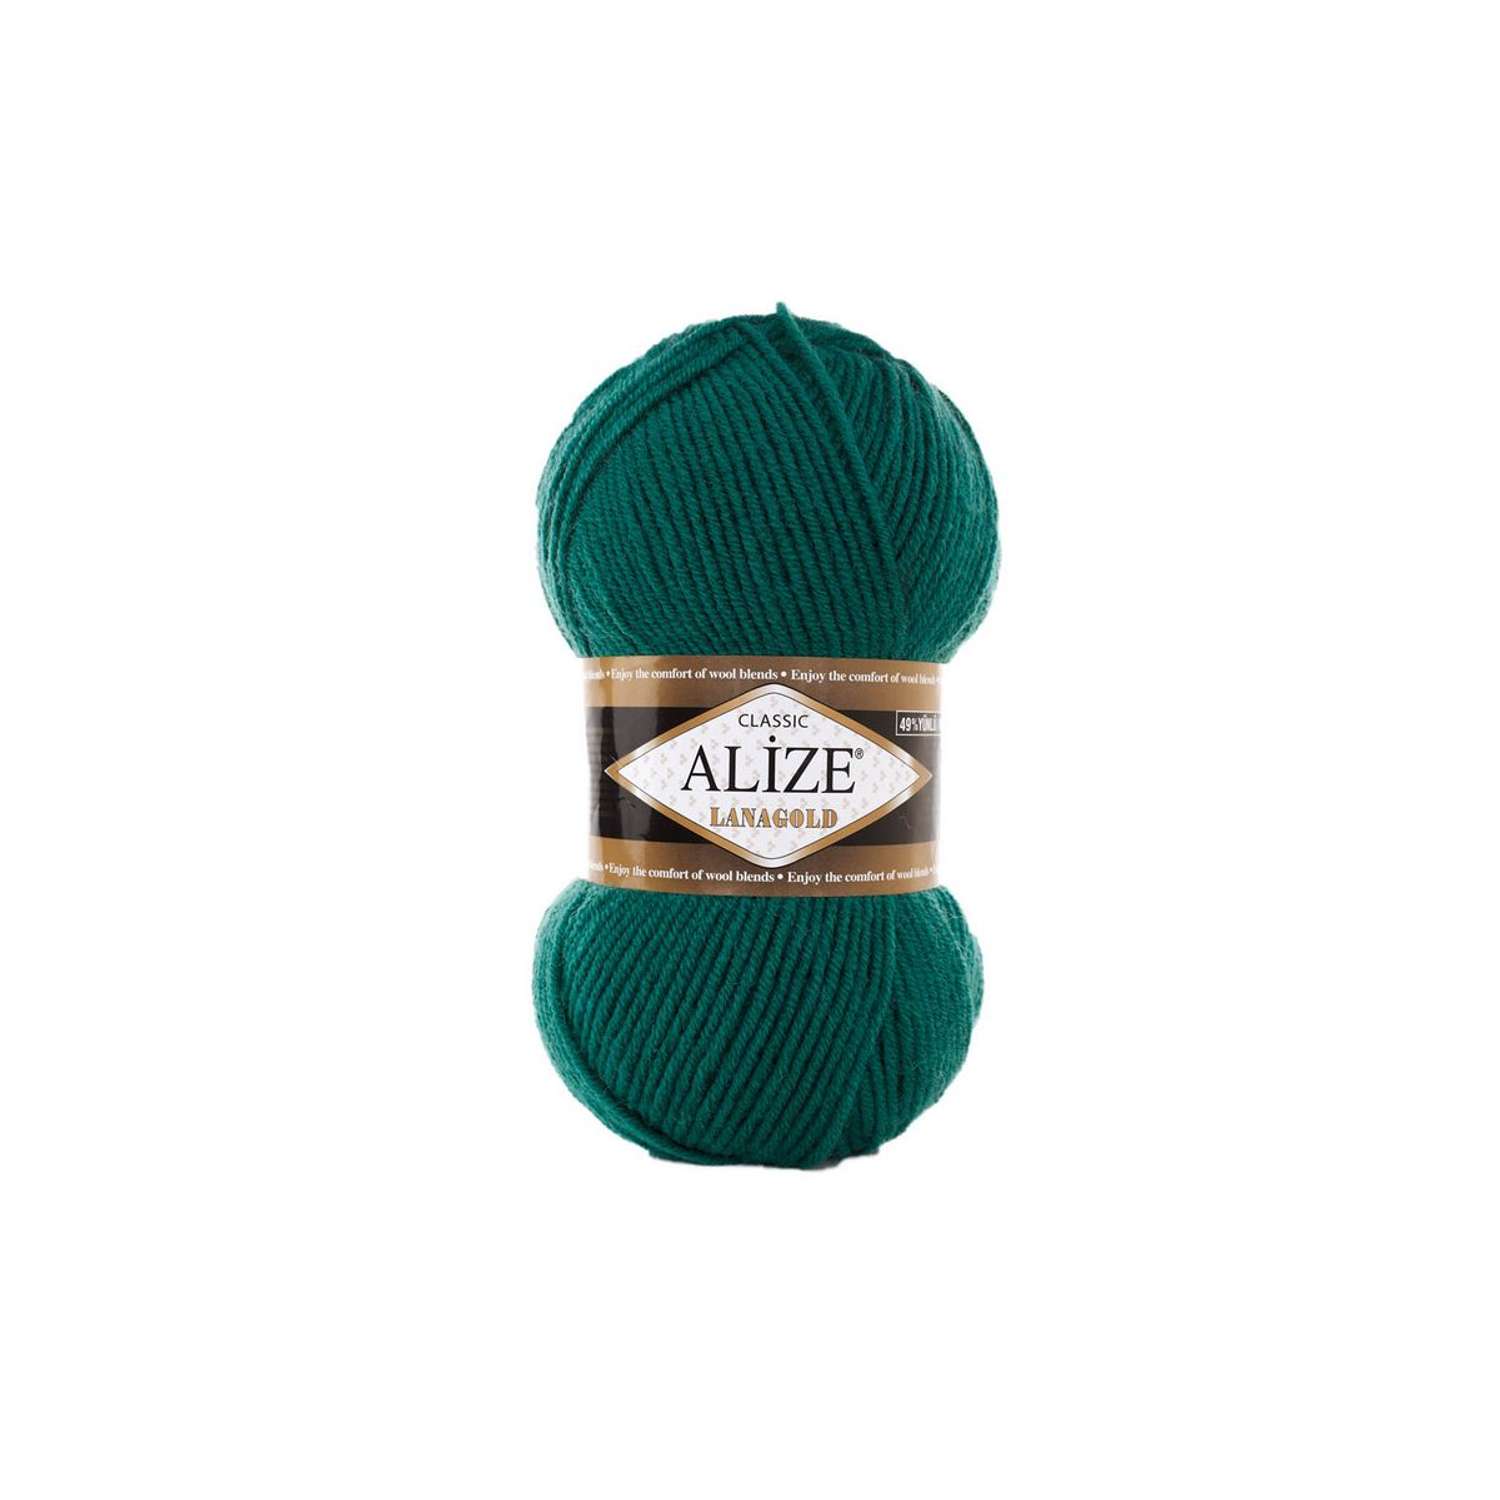 Пряжа Alize полушерстяная мягкая тонкая теплая Lanagold 100 гр 240 м 5 мотков 507 античный зеленый - фото 6